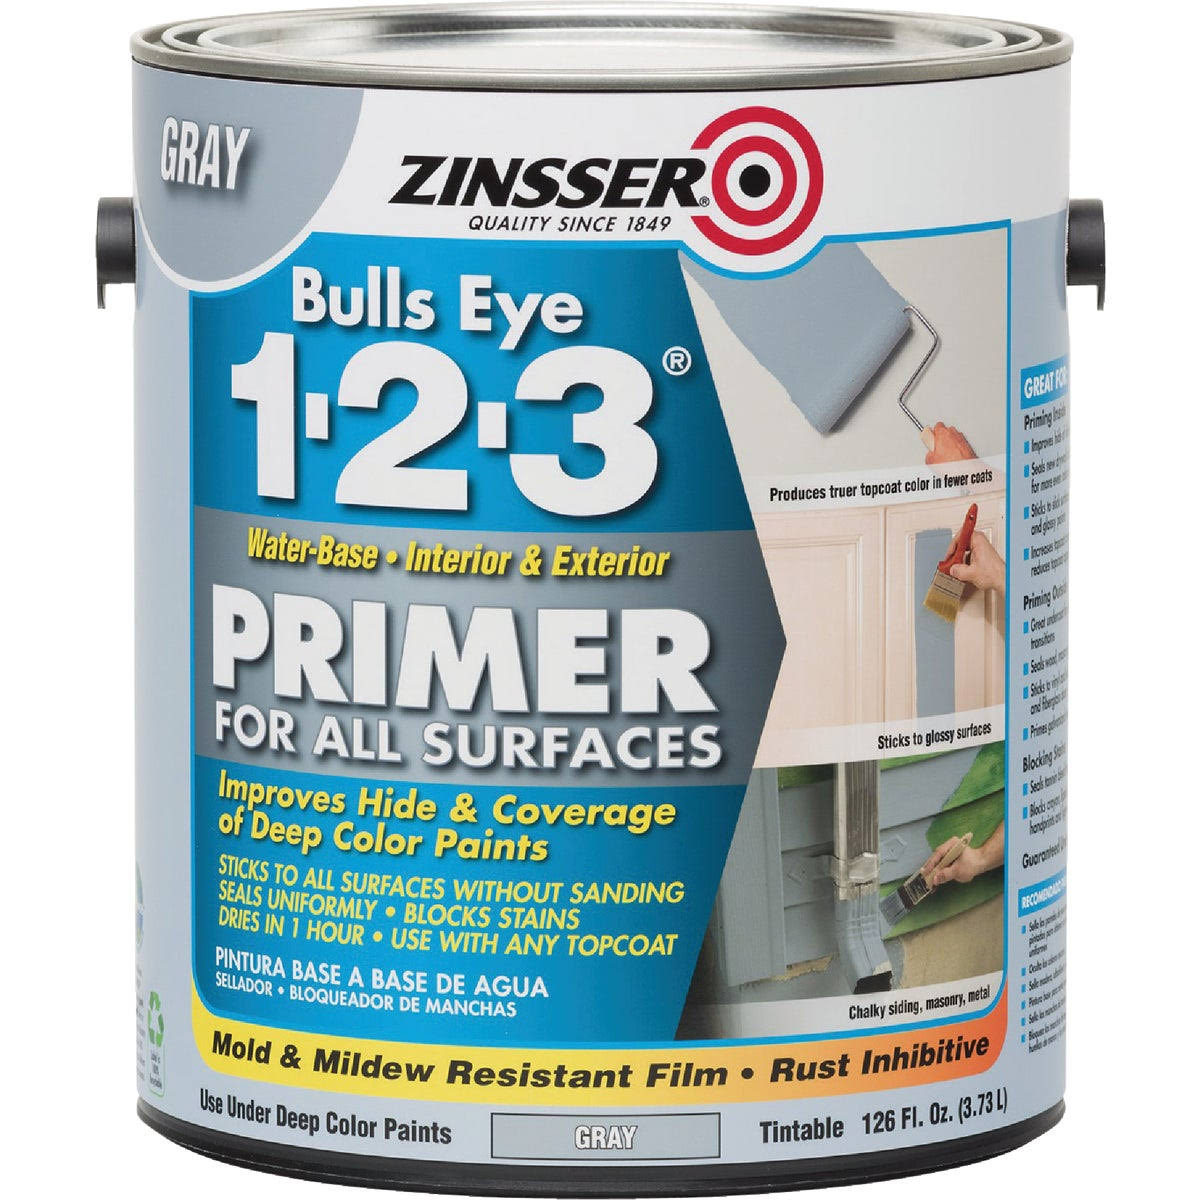 Zinsser Bulls Eye 1-2-3 Primer